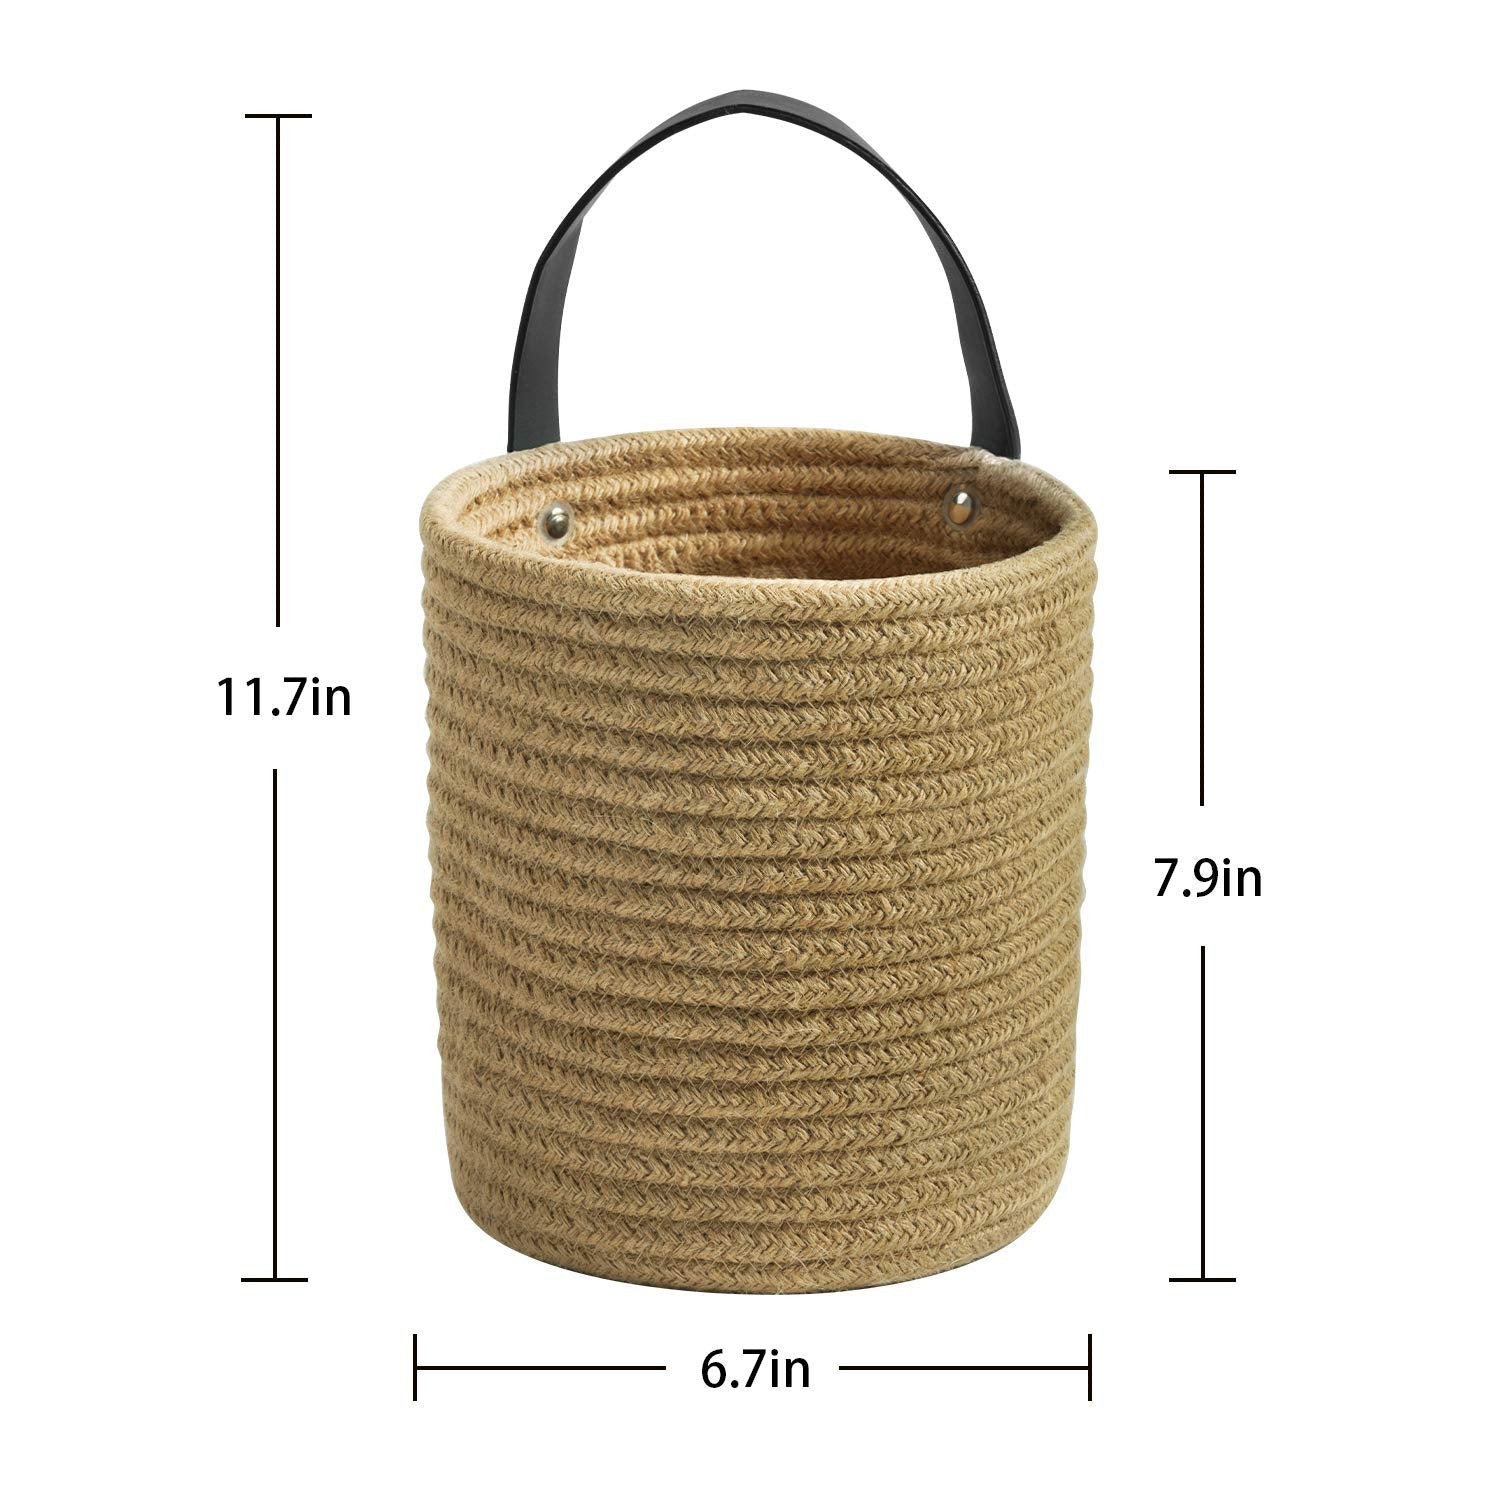 Ecofynd cotton Rope Plant Basket Rope Basket freeshipping - Ecofynd